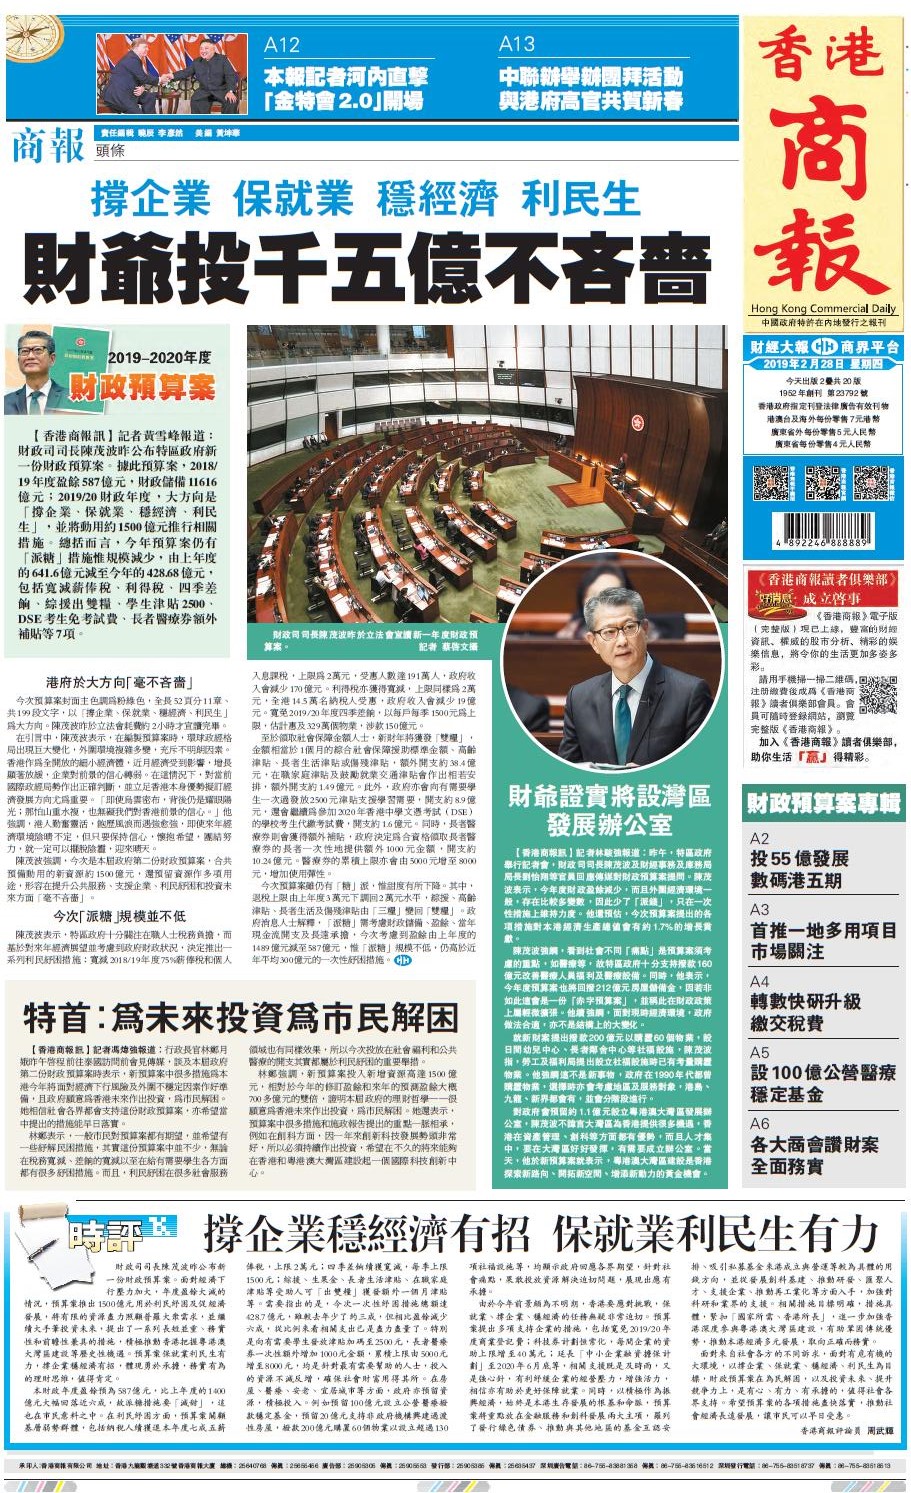 2月28日香港商报A1版